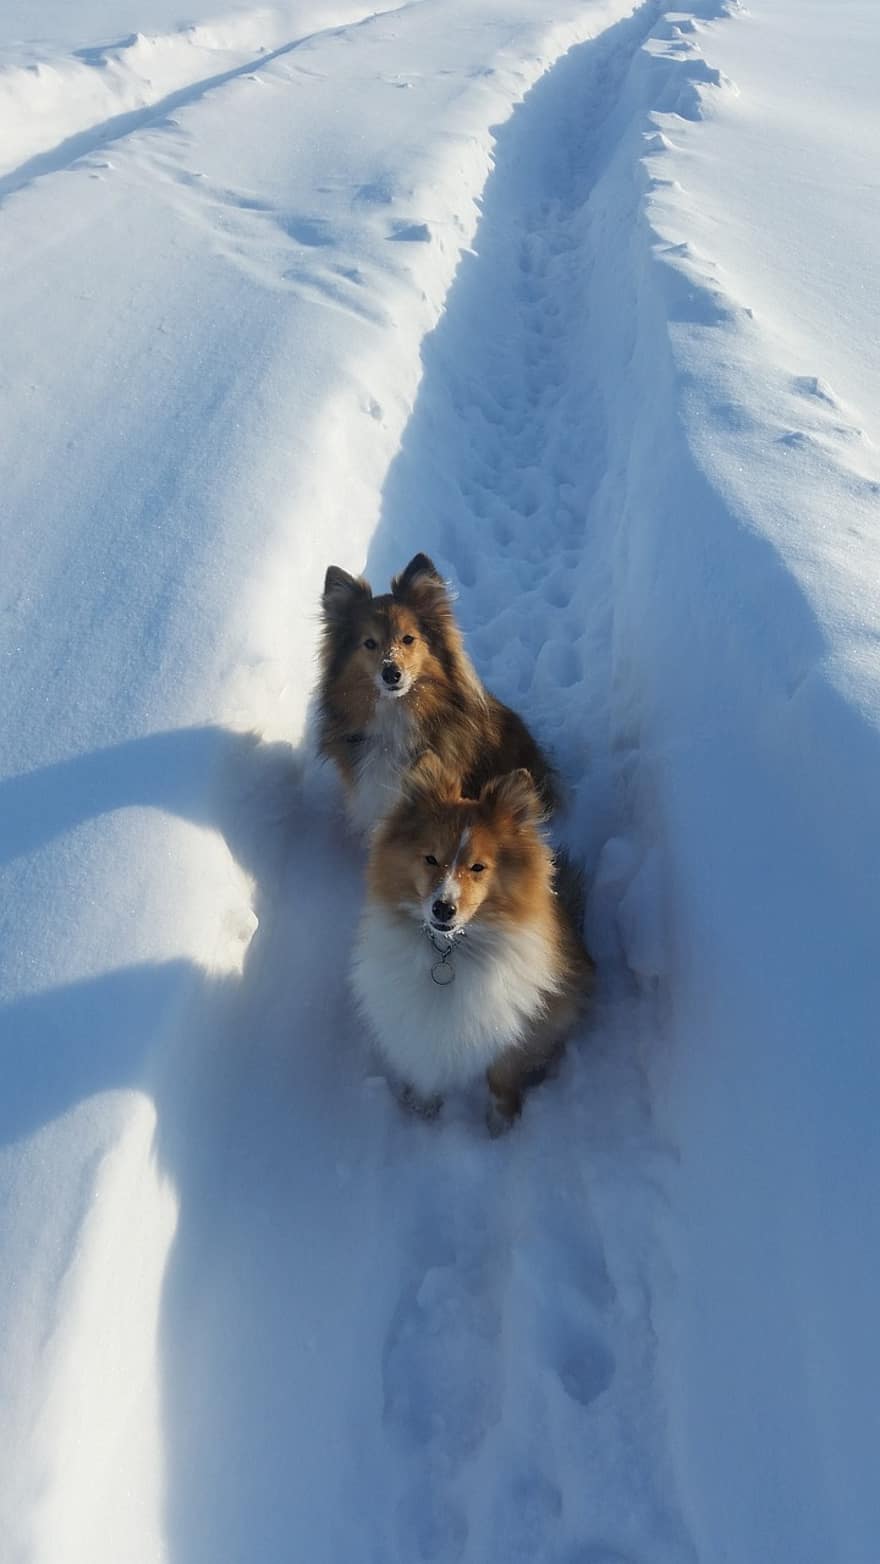 개, 쉘티, 눈, 겨울, 자연, 애완 동물, 순종 개, 귀엽다, 송곳니, 강아지, 가축